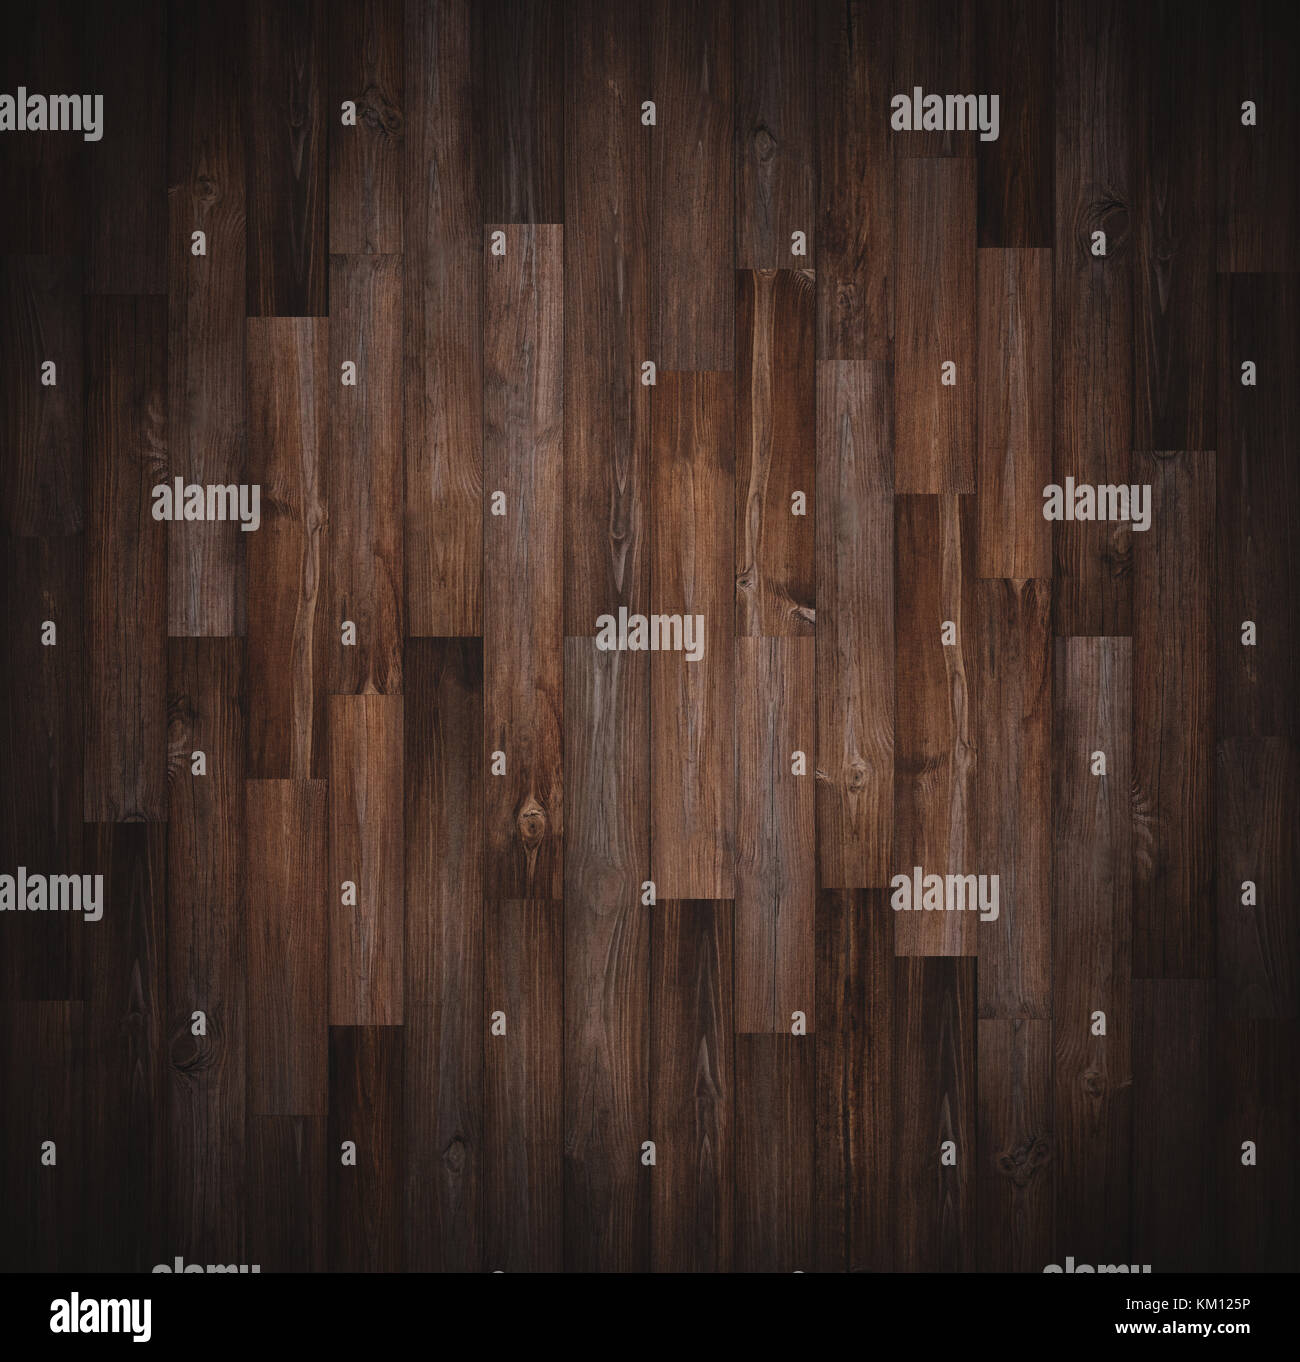 Dunkles Holz Textur Hintergrund, Vignette Grenze Stockfoto